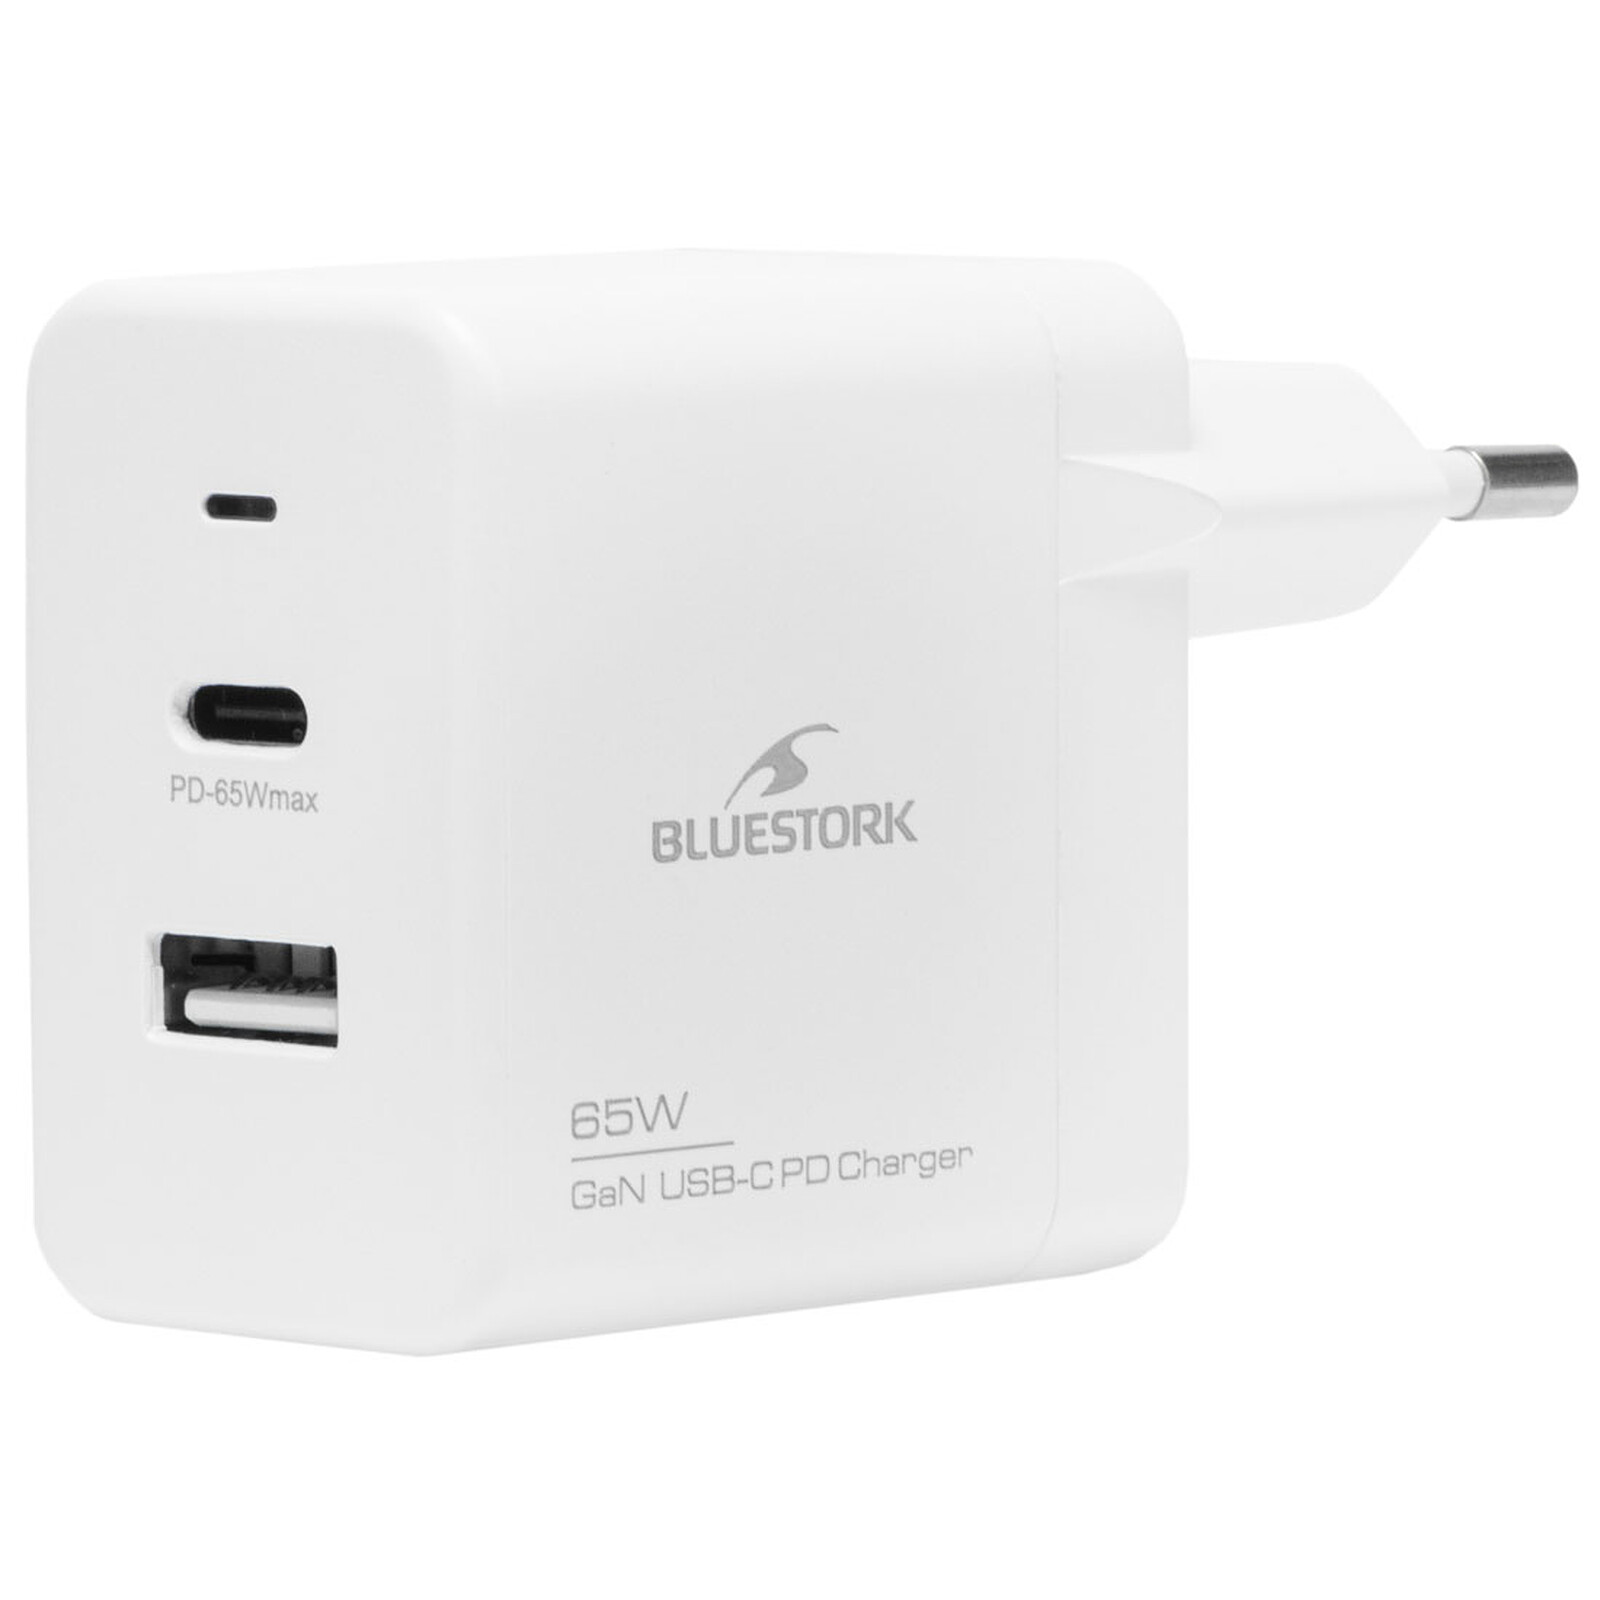 Bluestork Chargeur USB-C PD 3.0 30W v2 - Chargeur PC portable - Garantie 3  ans LDLC